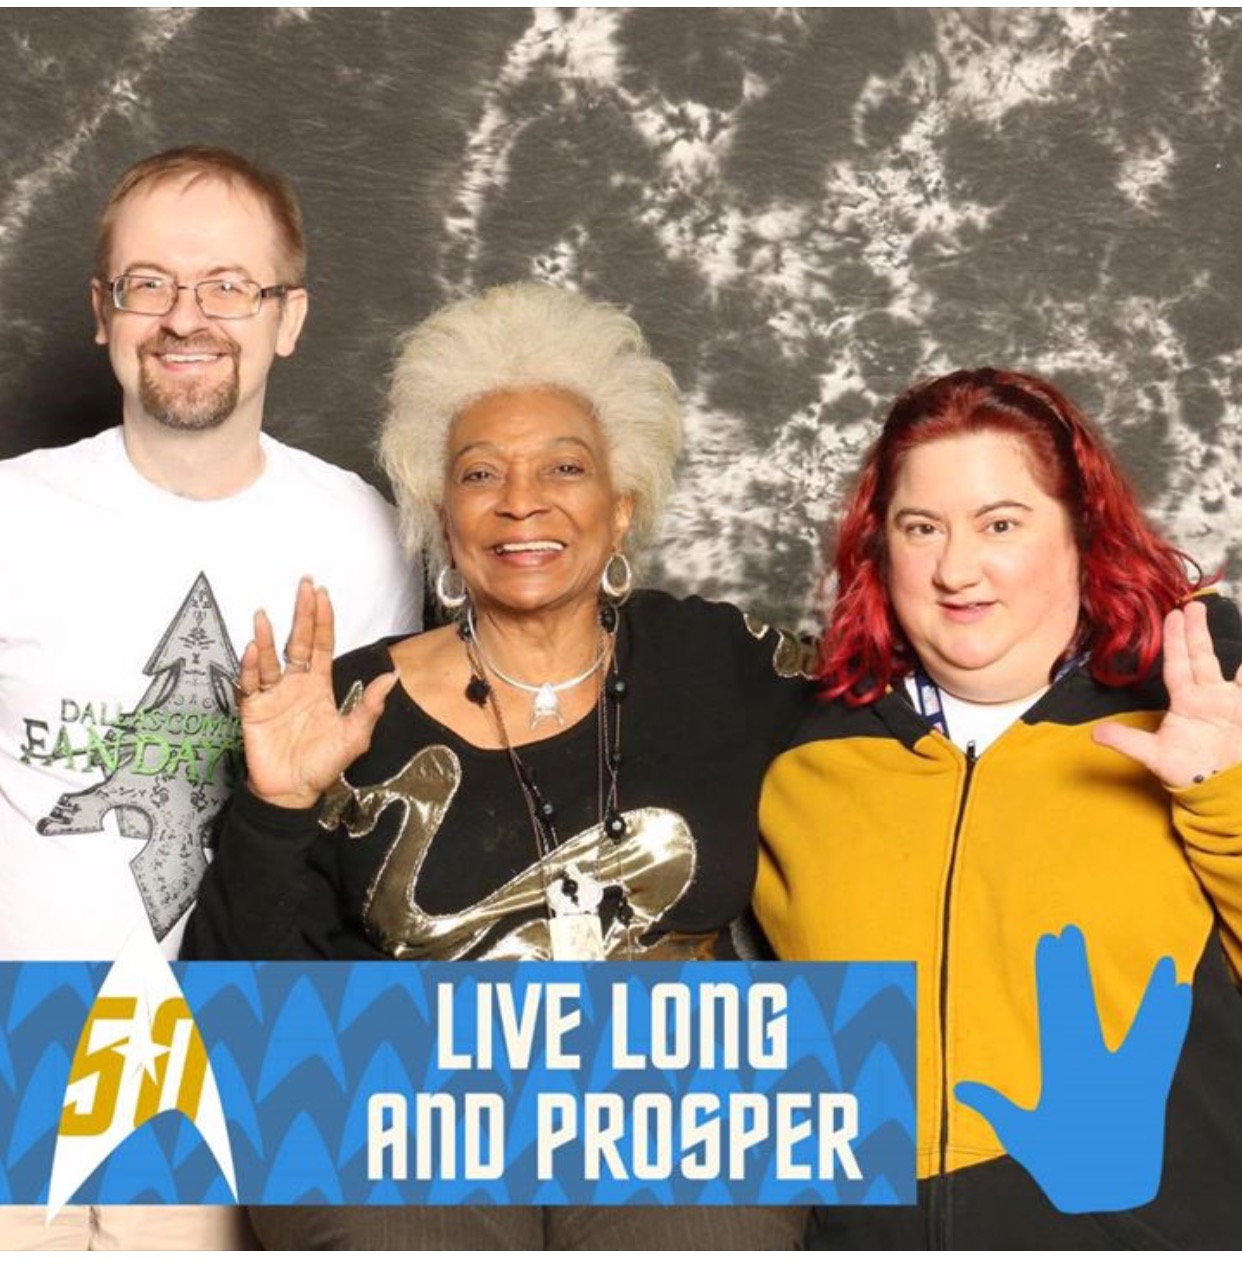 Live Long & Prosper